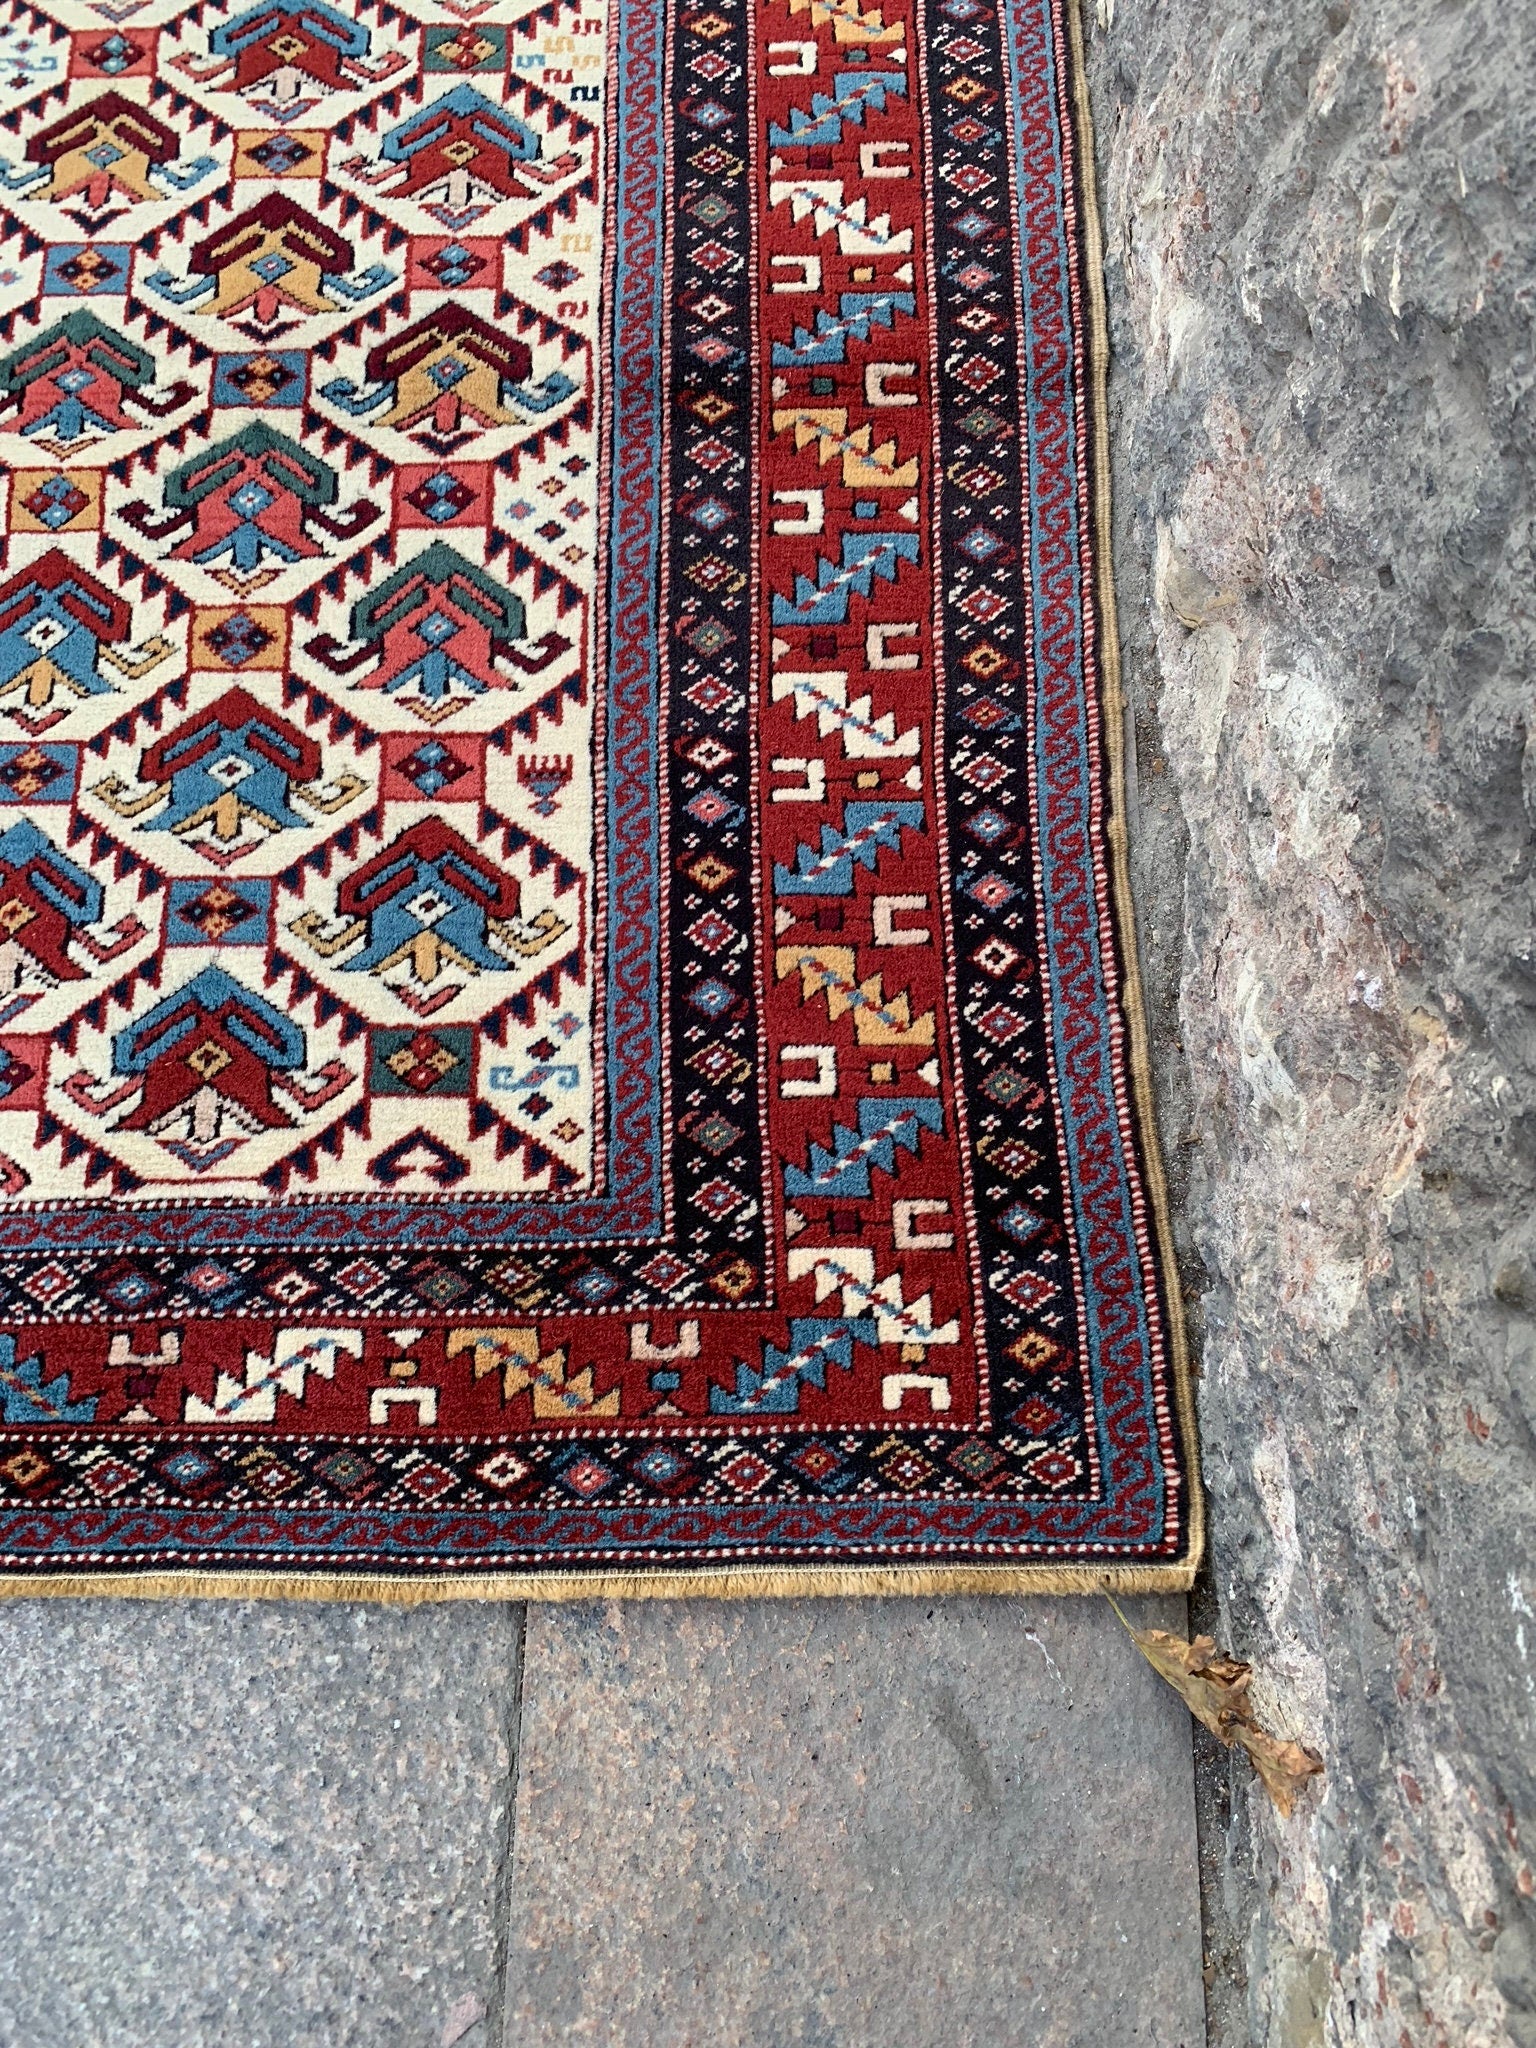 Authentic kilim rug, 3.4x4.2 ft, IM808